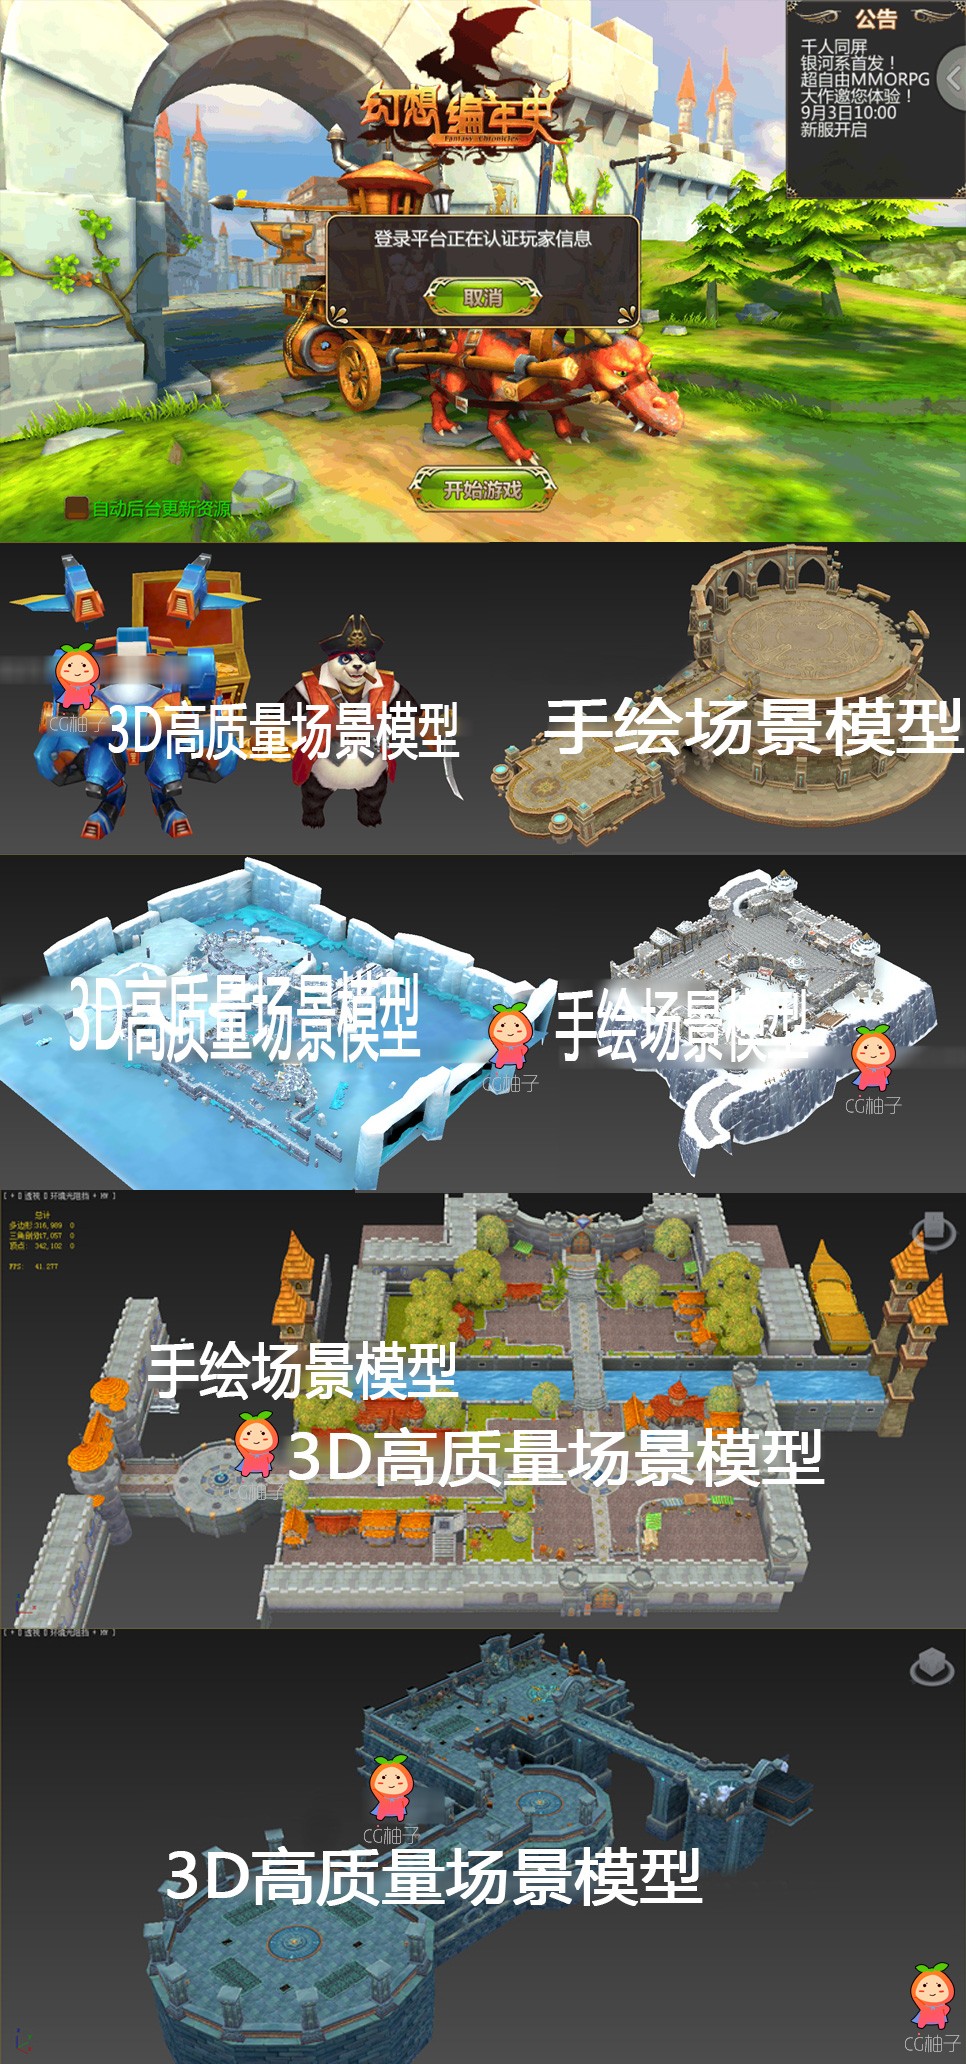 《幻想编年史》游戏场景模型 3dmax模型资源 3D场景模型下载